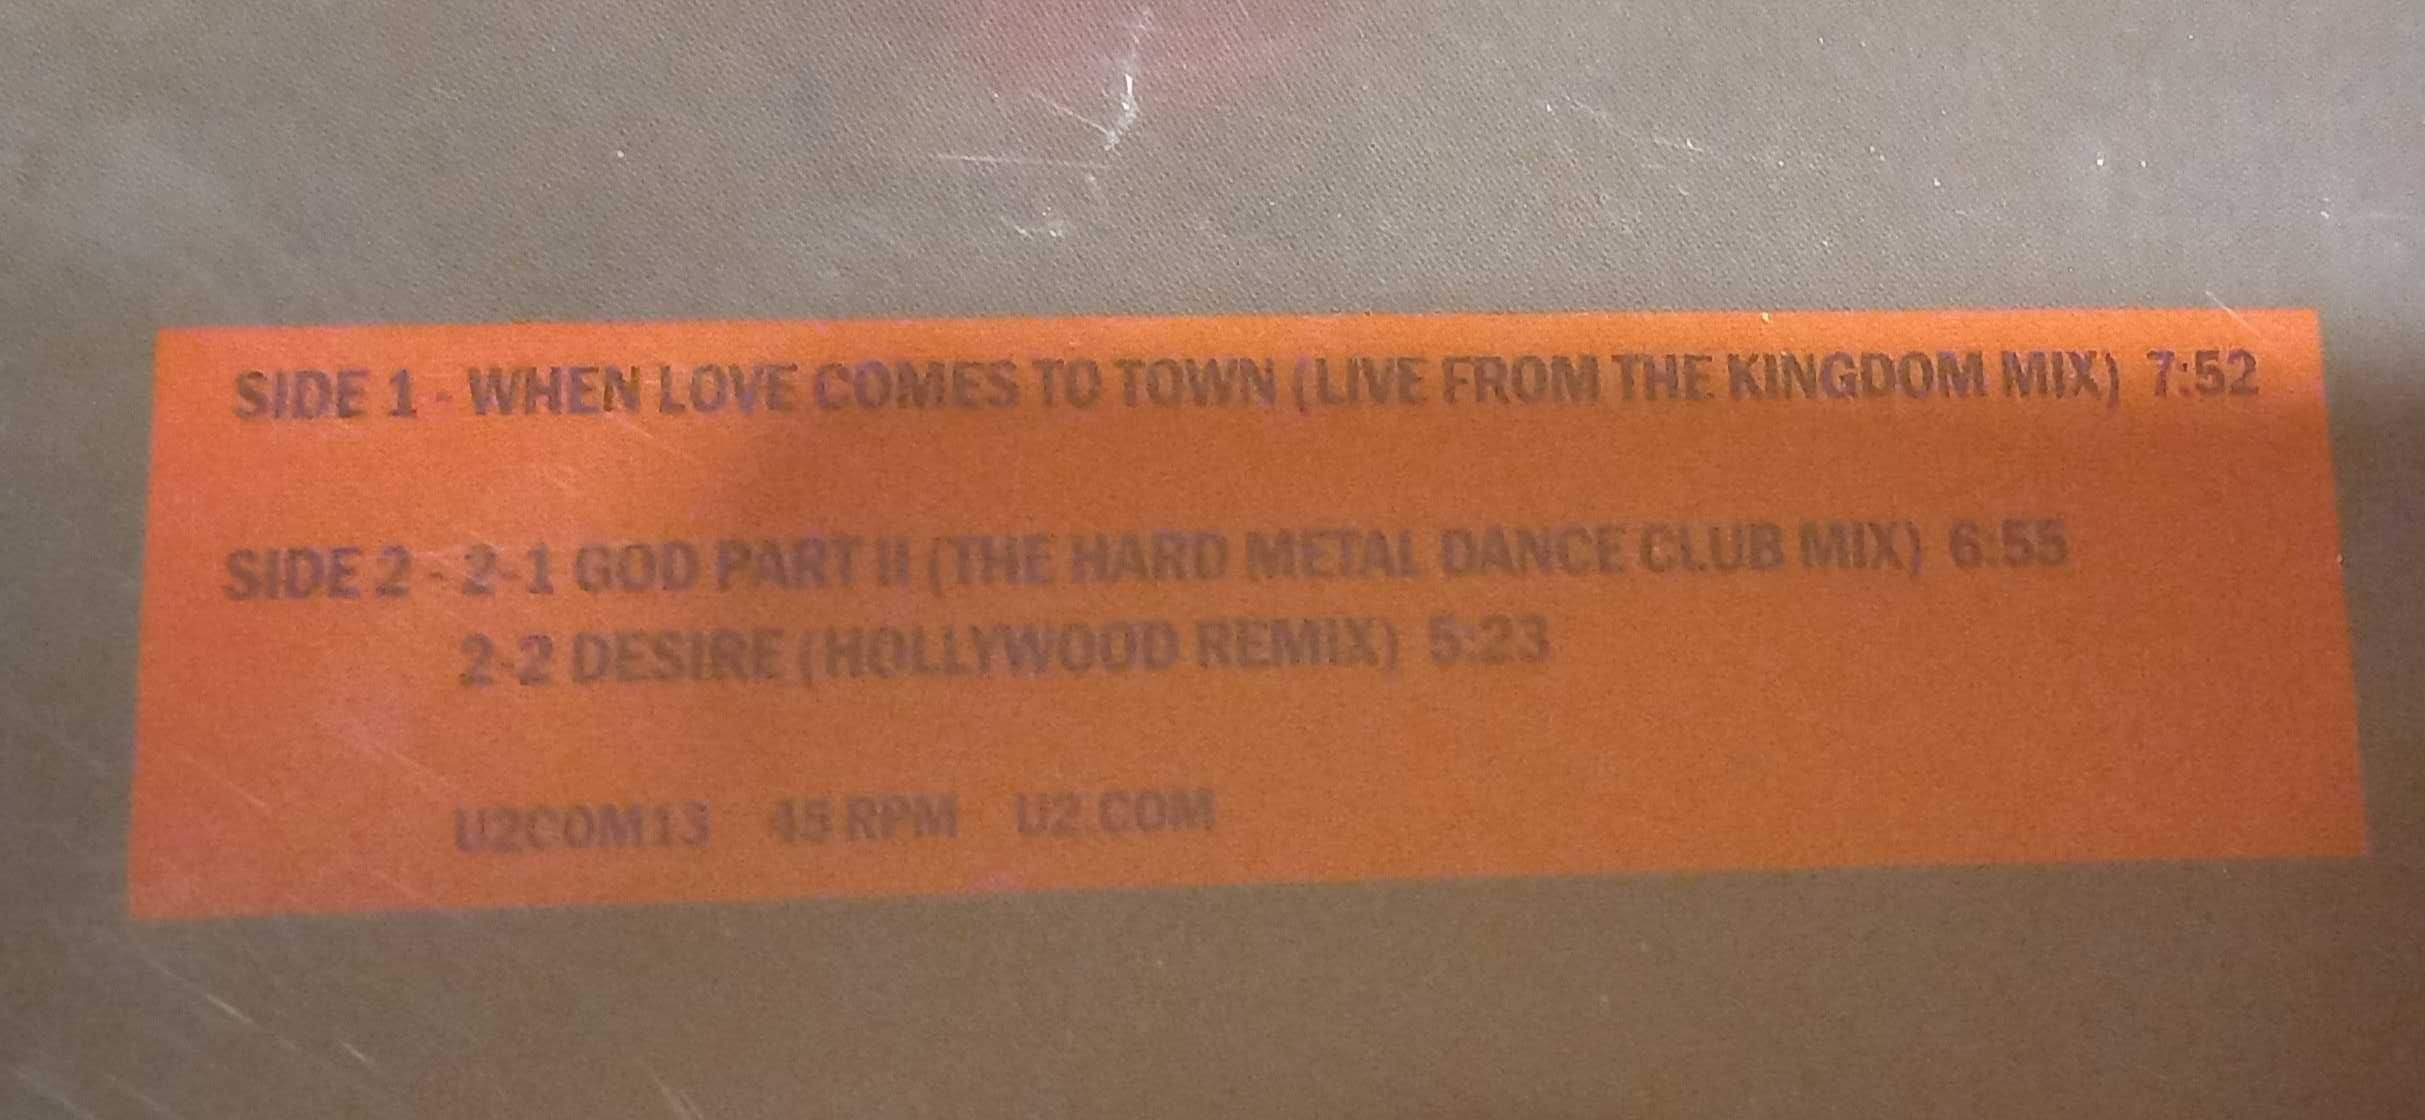 U2 3D - Dance Mixes